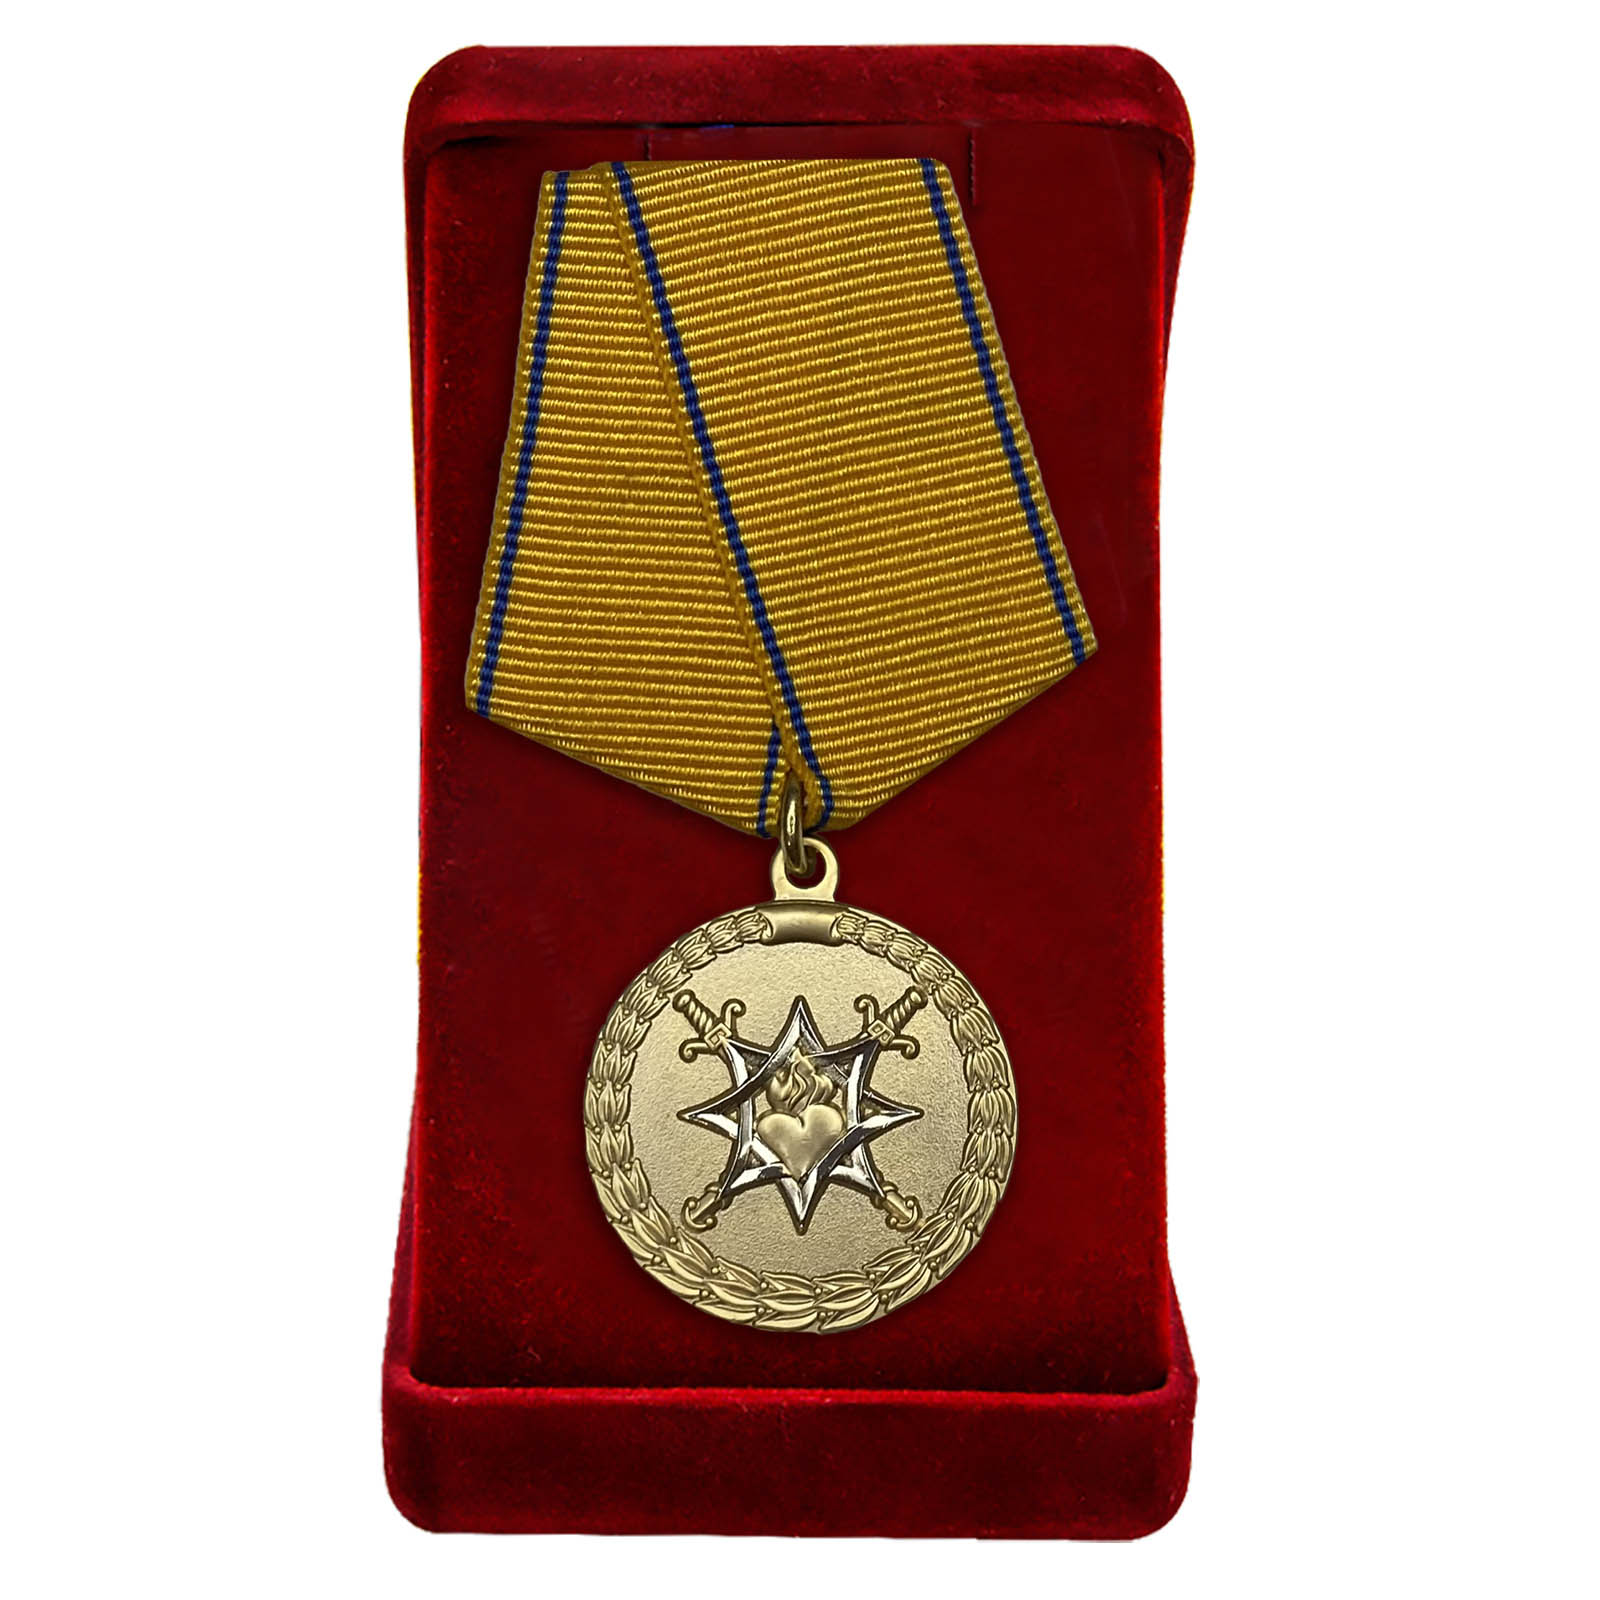 Купить медаль За смелость во имя спасения МВД РФ оптом или в розницу